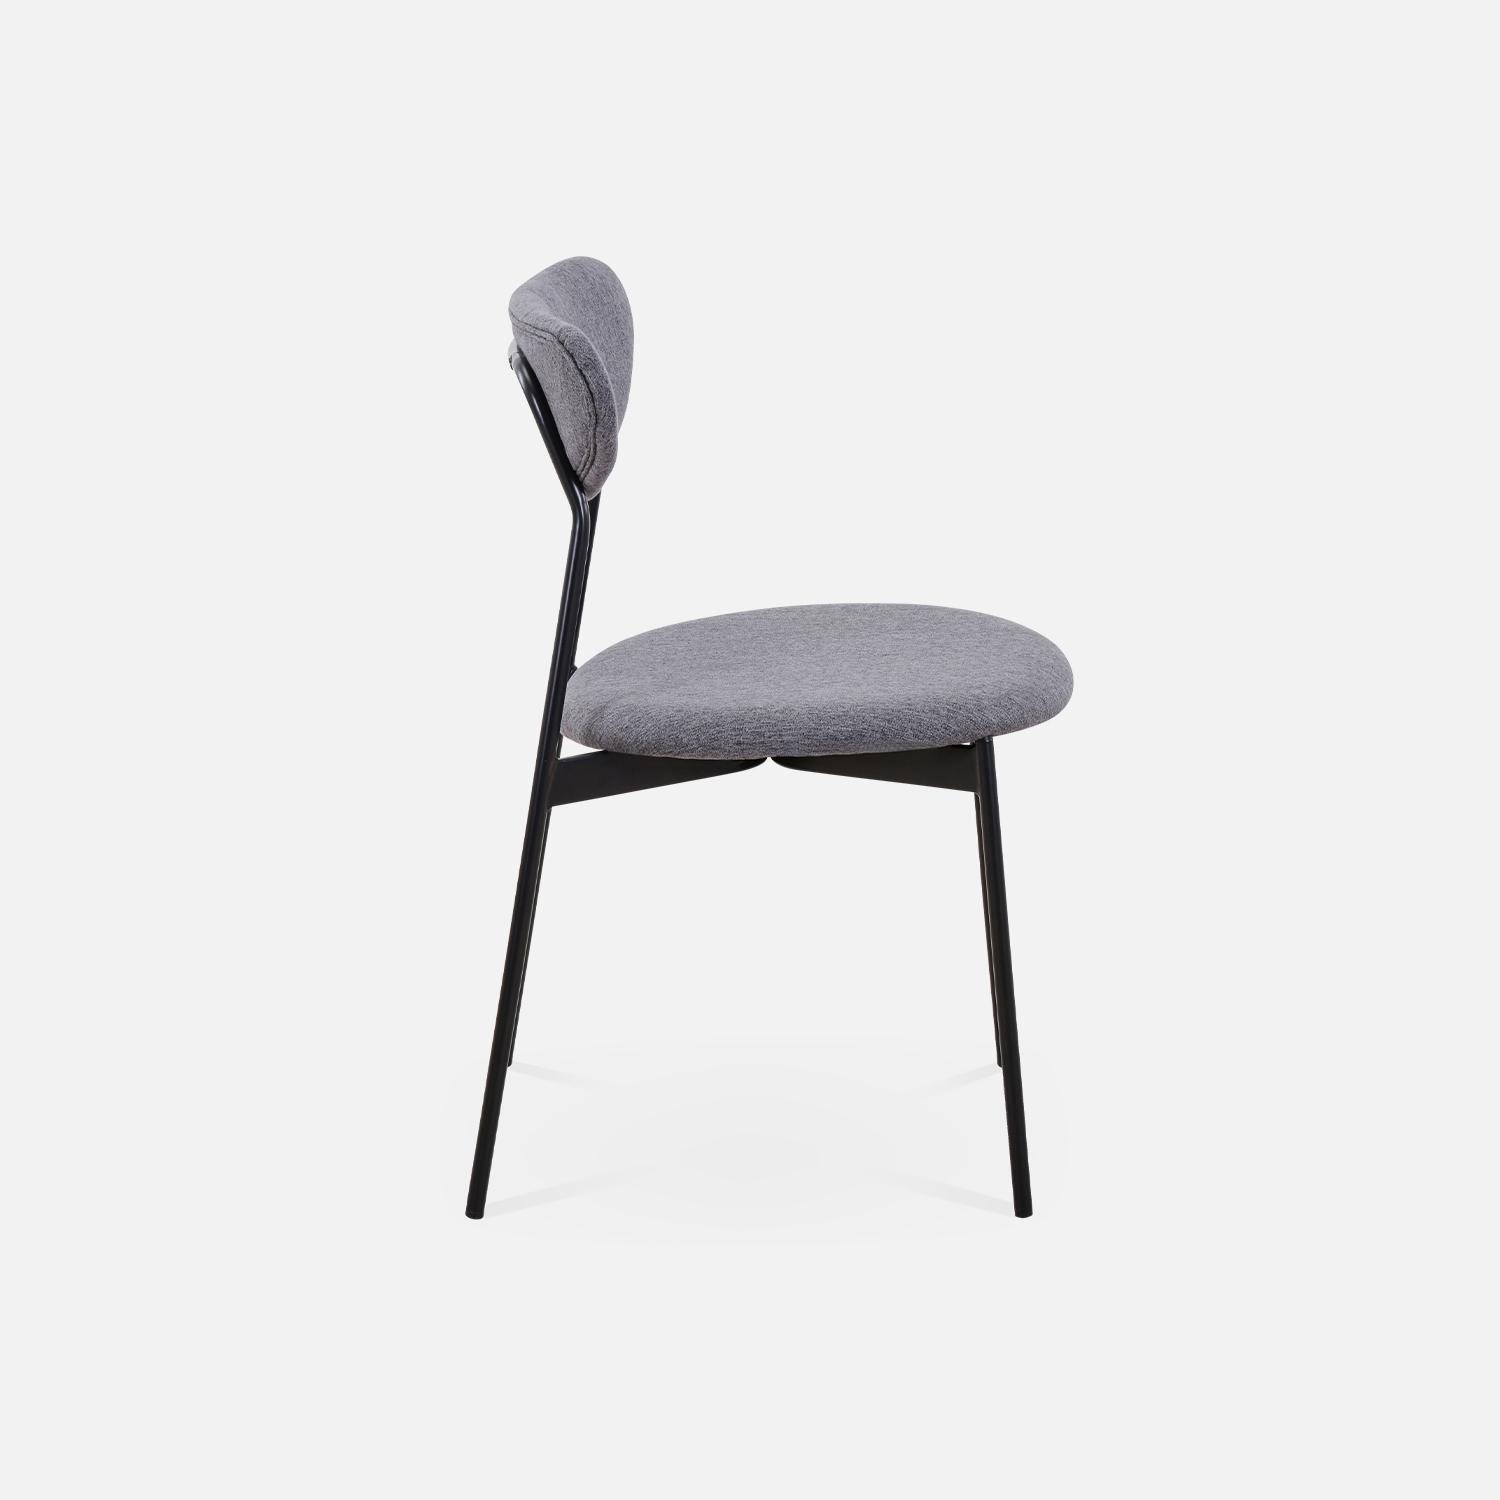 Juego de 4 sillas - Arty - Escandinavas y vintage, asiento y respaldo gris oscuro, patas de acero ,sweeek,Photo5